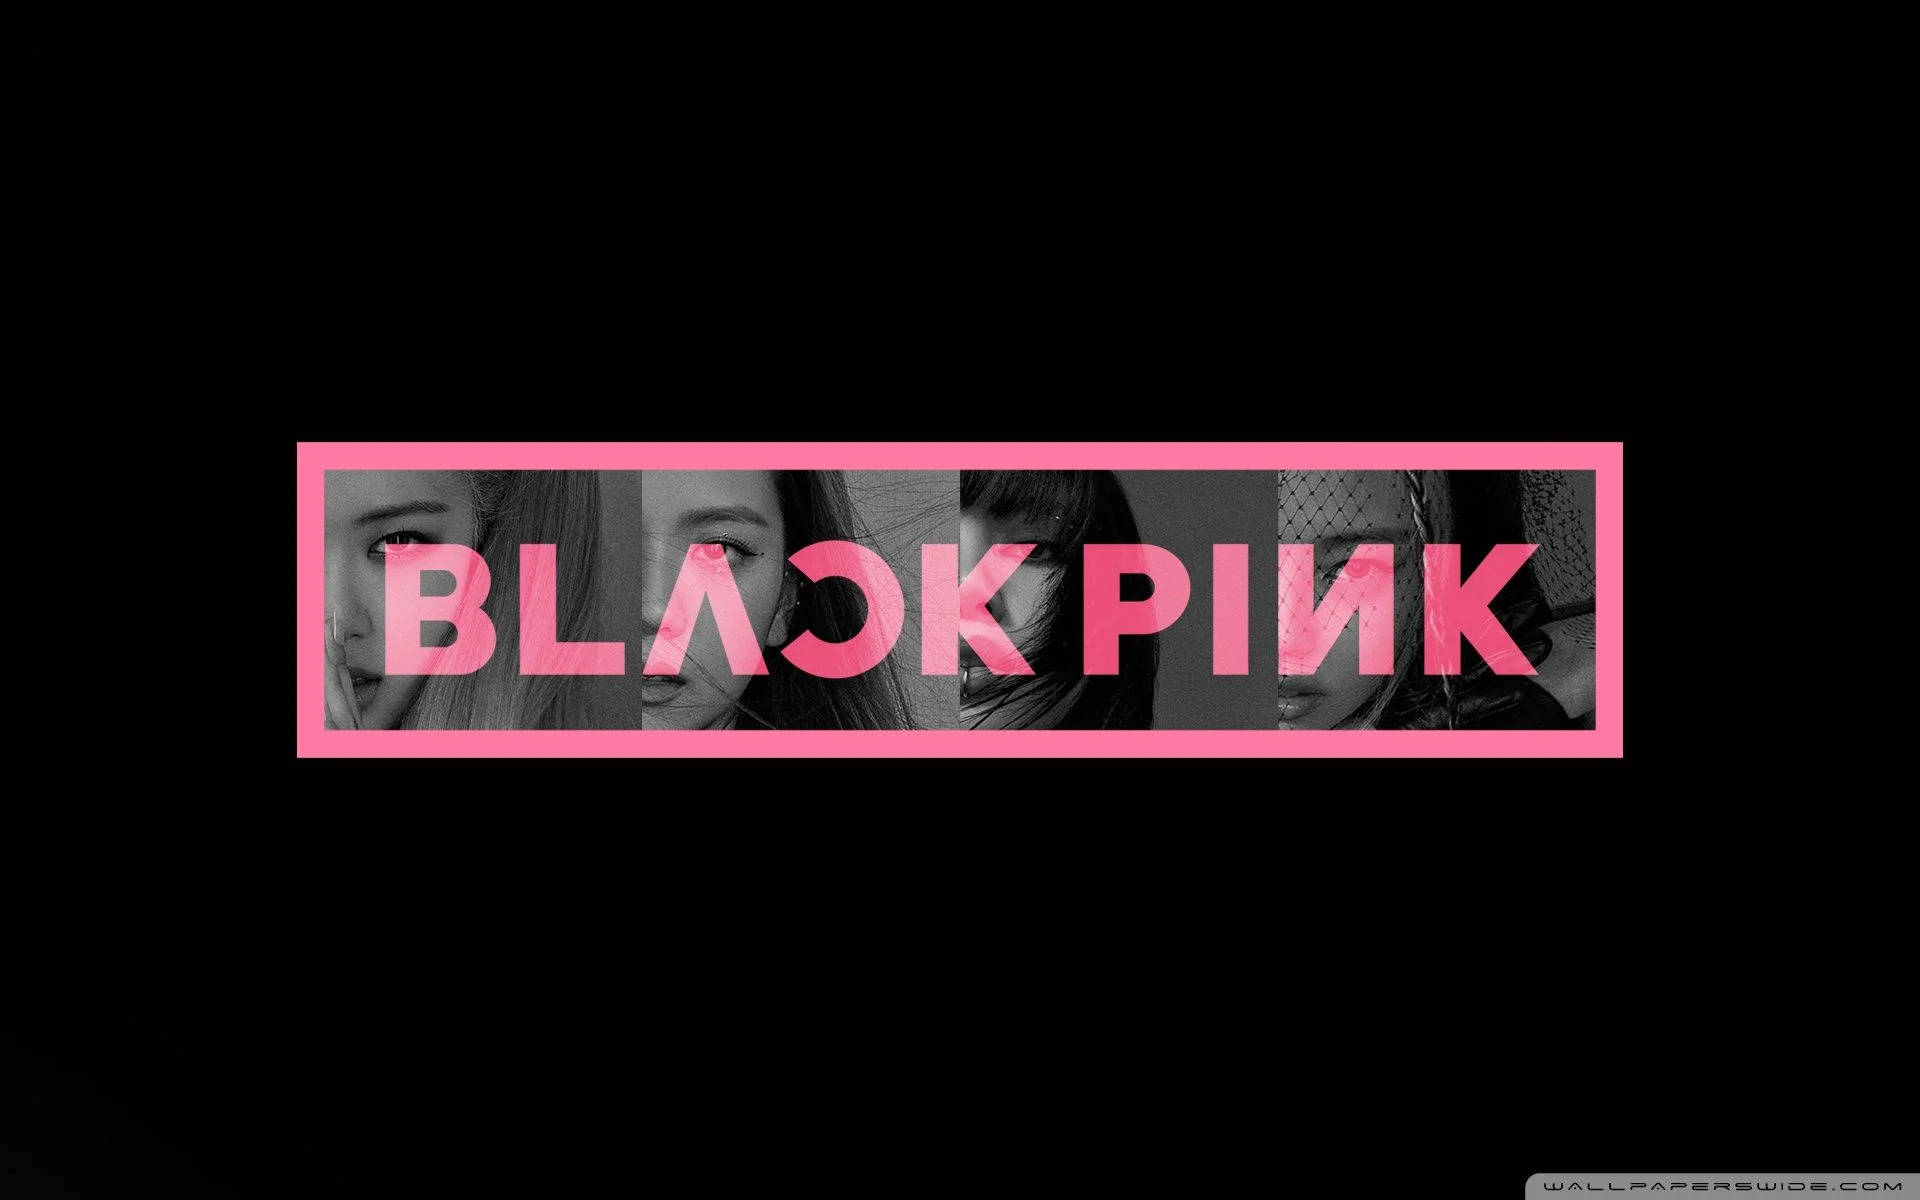 Blackpink's Iconic Logo Background